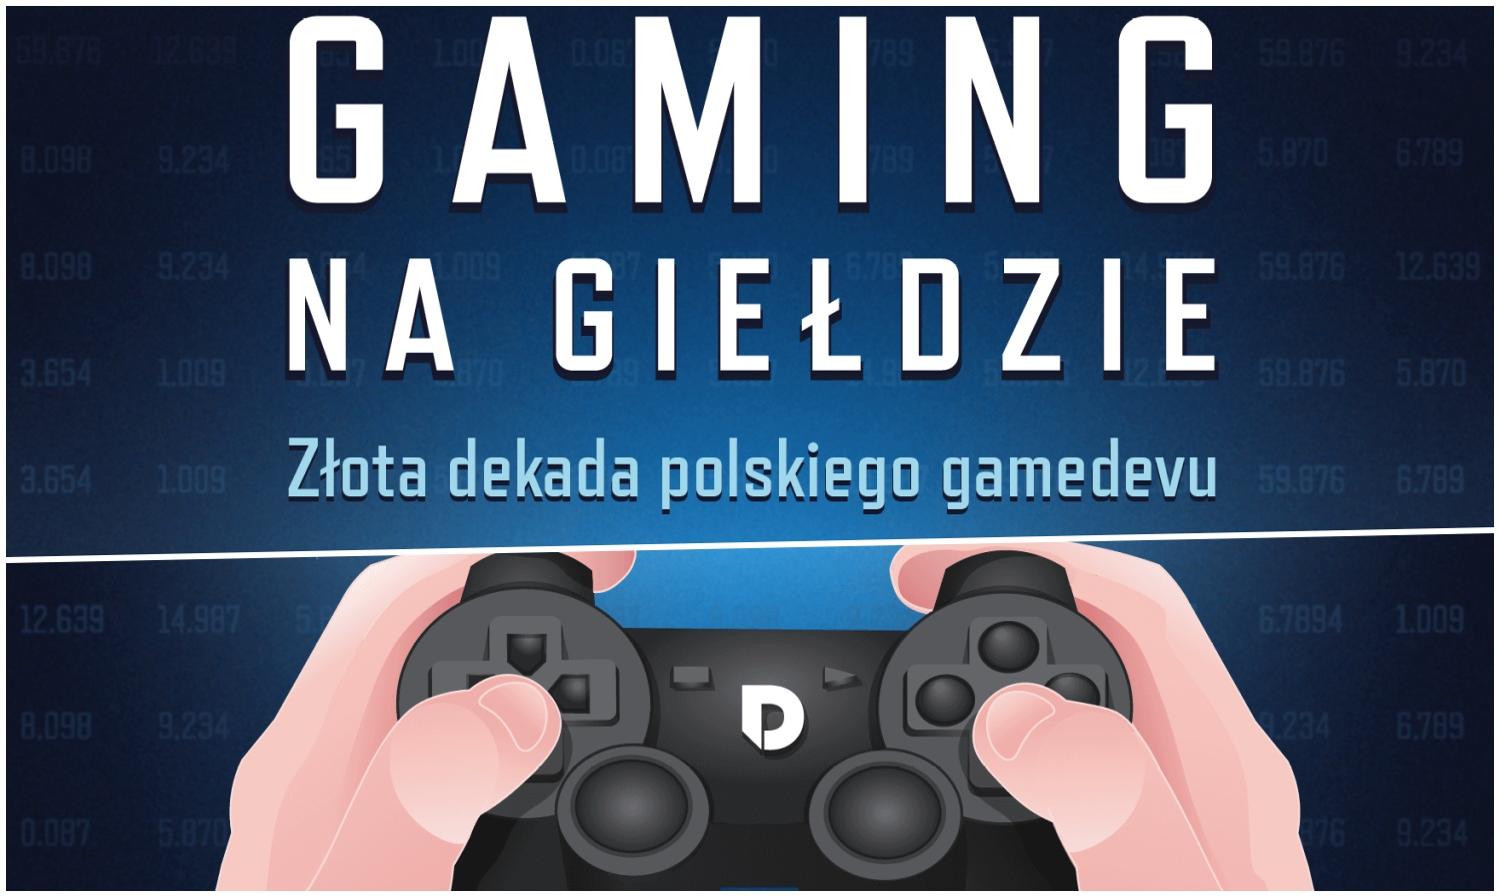 Polski gaming : jaka jest szansa na zyski na tych akcjach? Wyniki